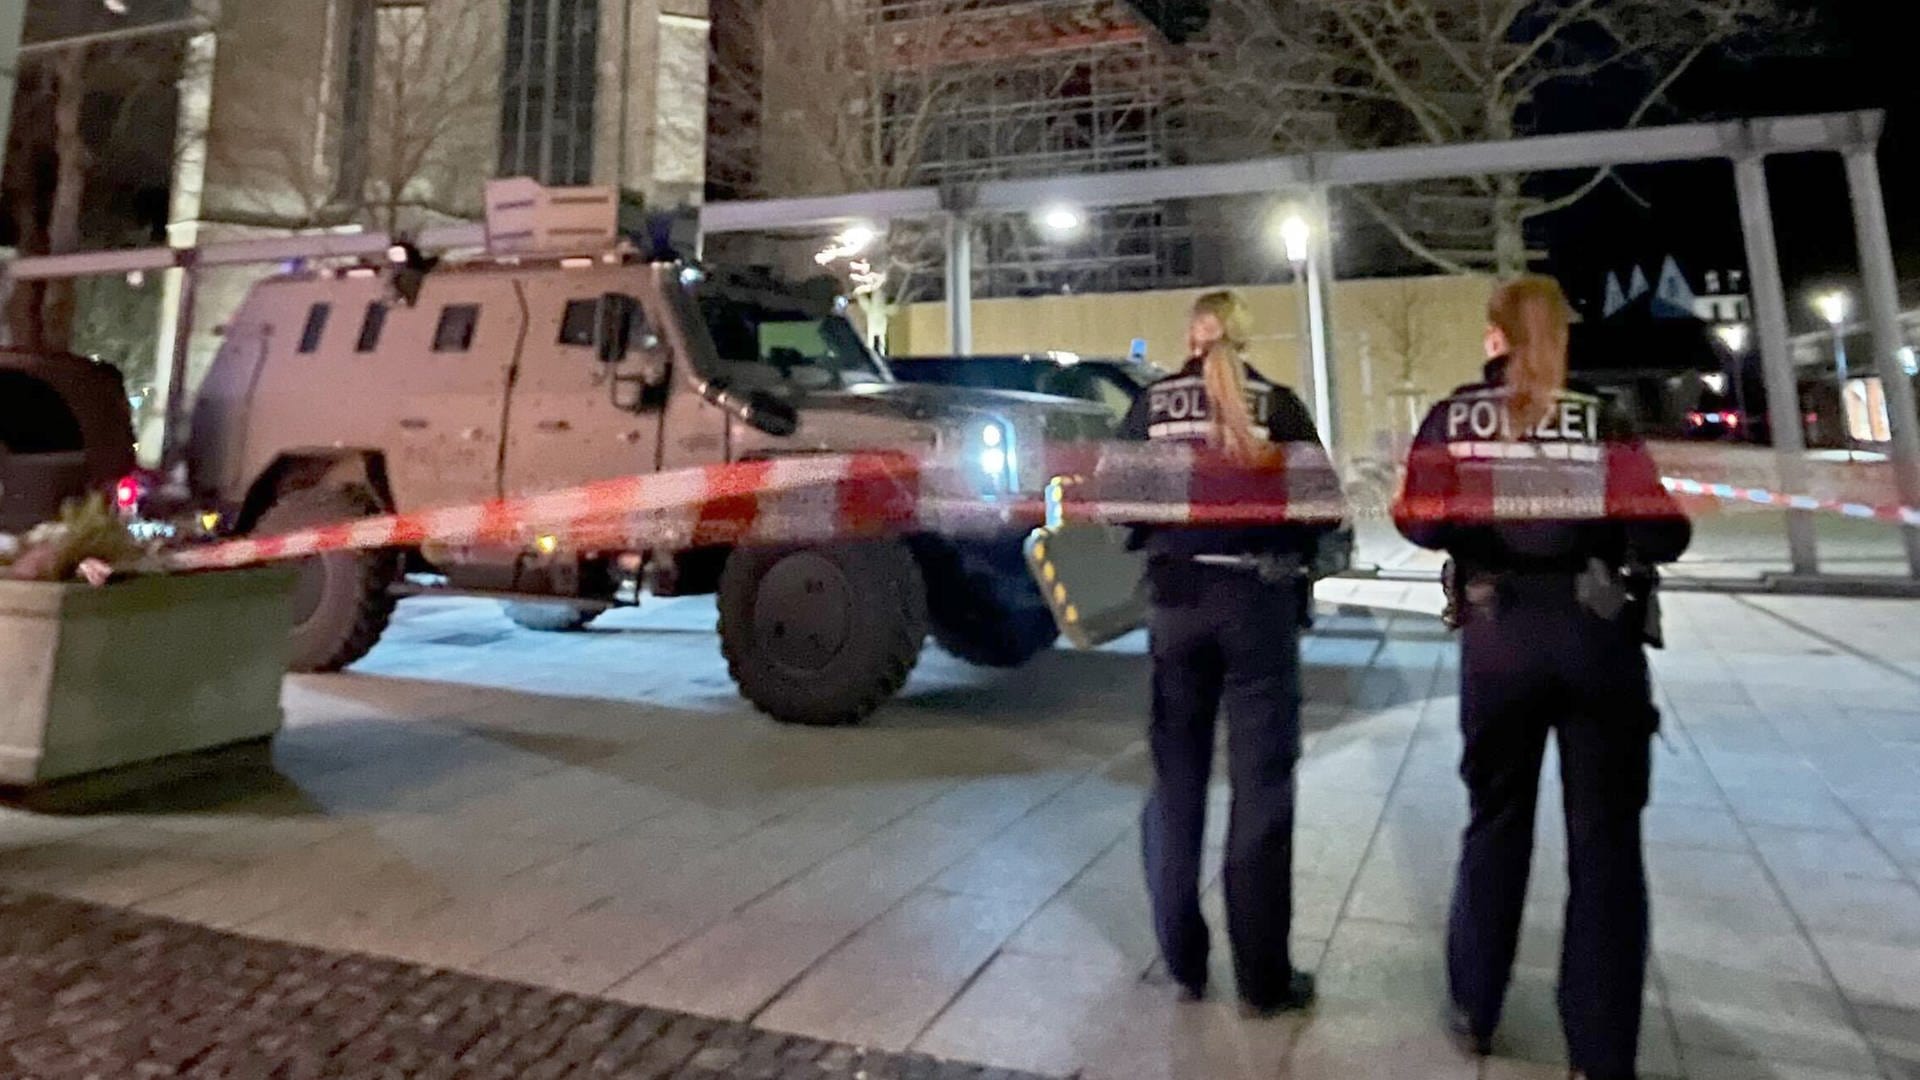 Nach einer Geiselnahme in Ulm hat die Polizei den mutmaßlichen Täter festgenommen. Die Polizei ist mit zahlreichen Kräften vor Ort.